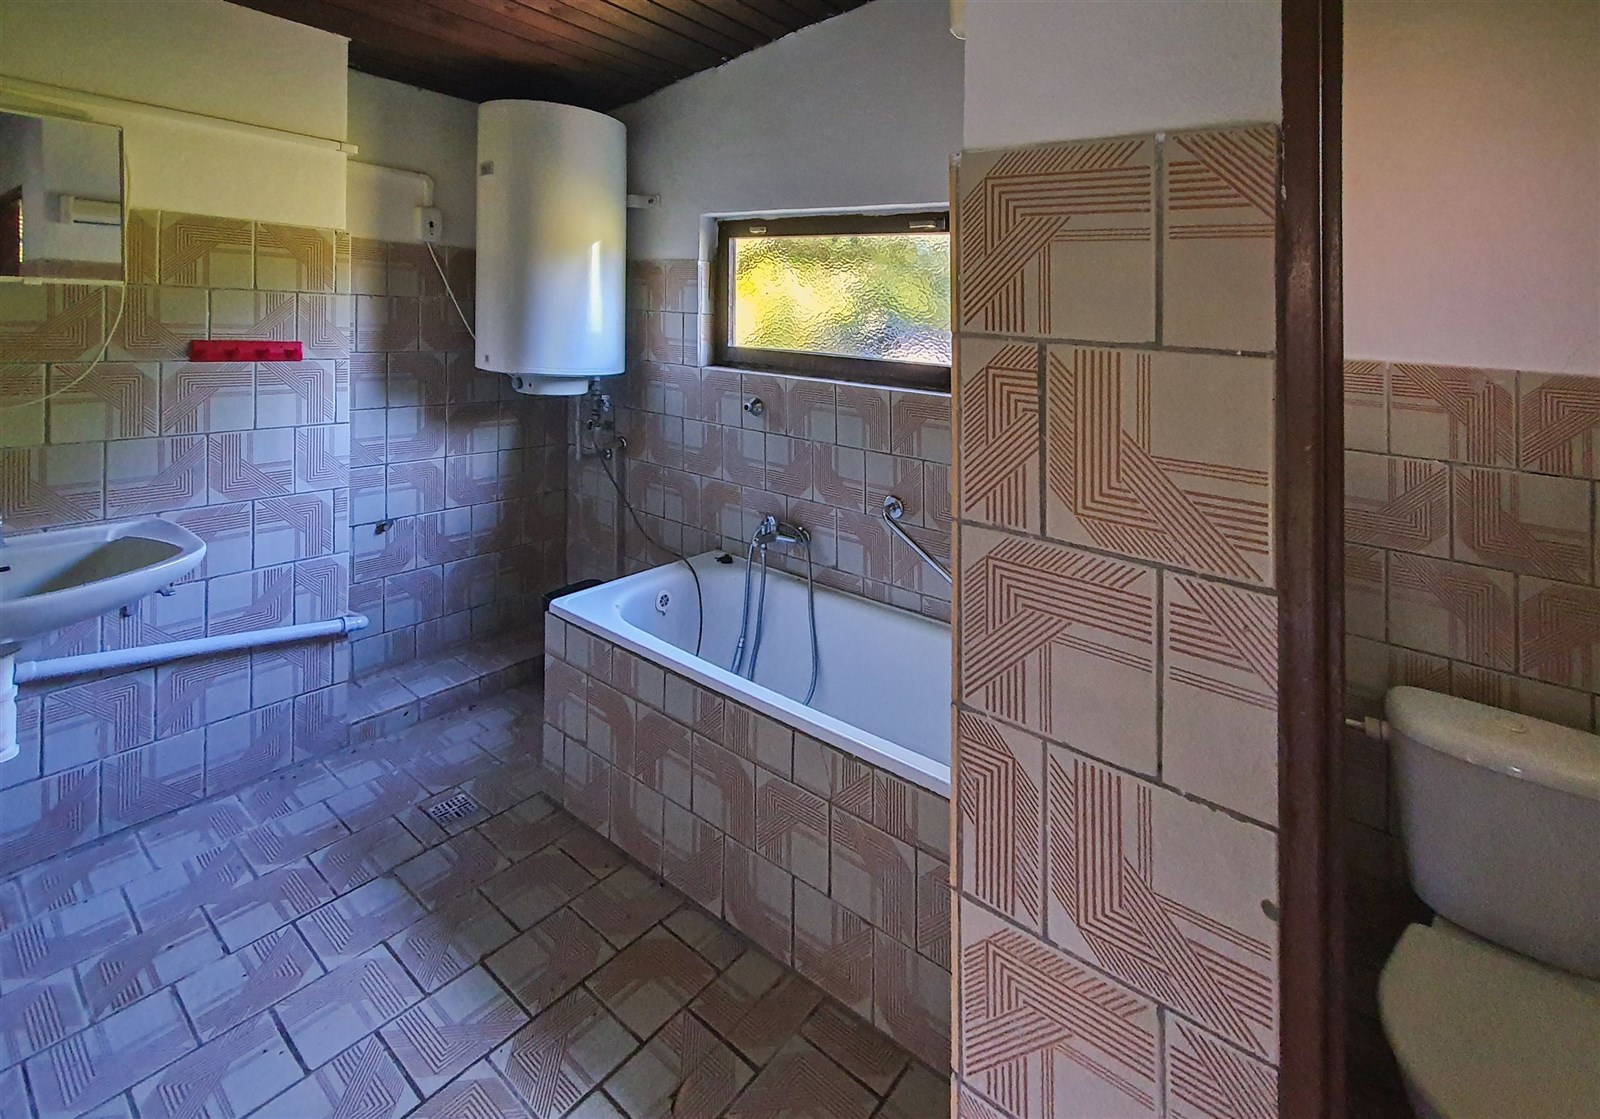 vana s stěna dlaždic, přirozené světlo, kachličková podlaha, ohřívač vody, a zrcadlo